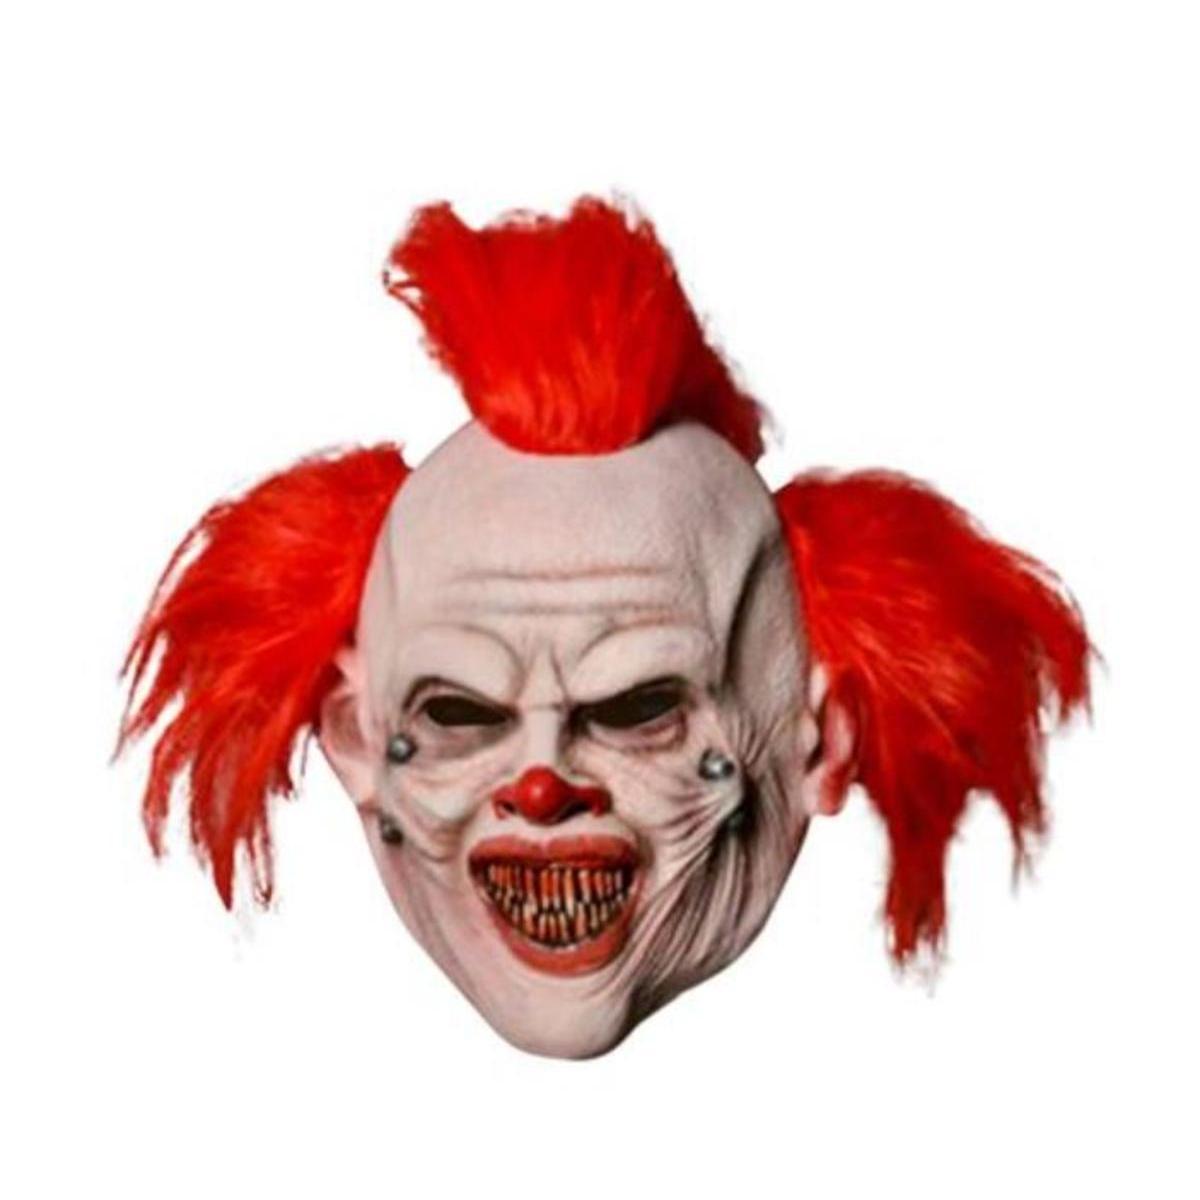 Masque d'Halloween Clown punk - L 18 x H 26 x l 10 cm - Beige, rouge